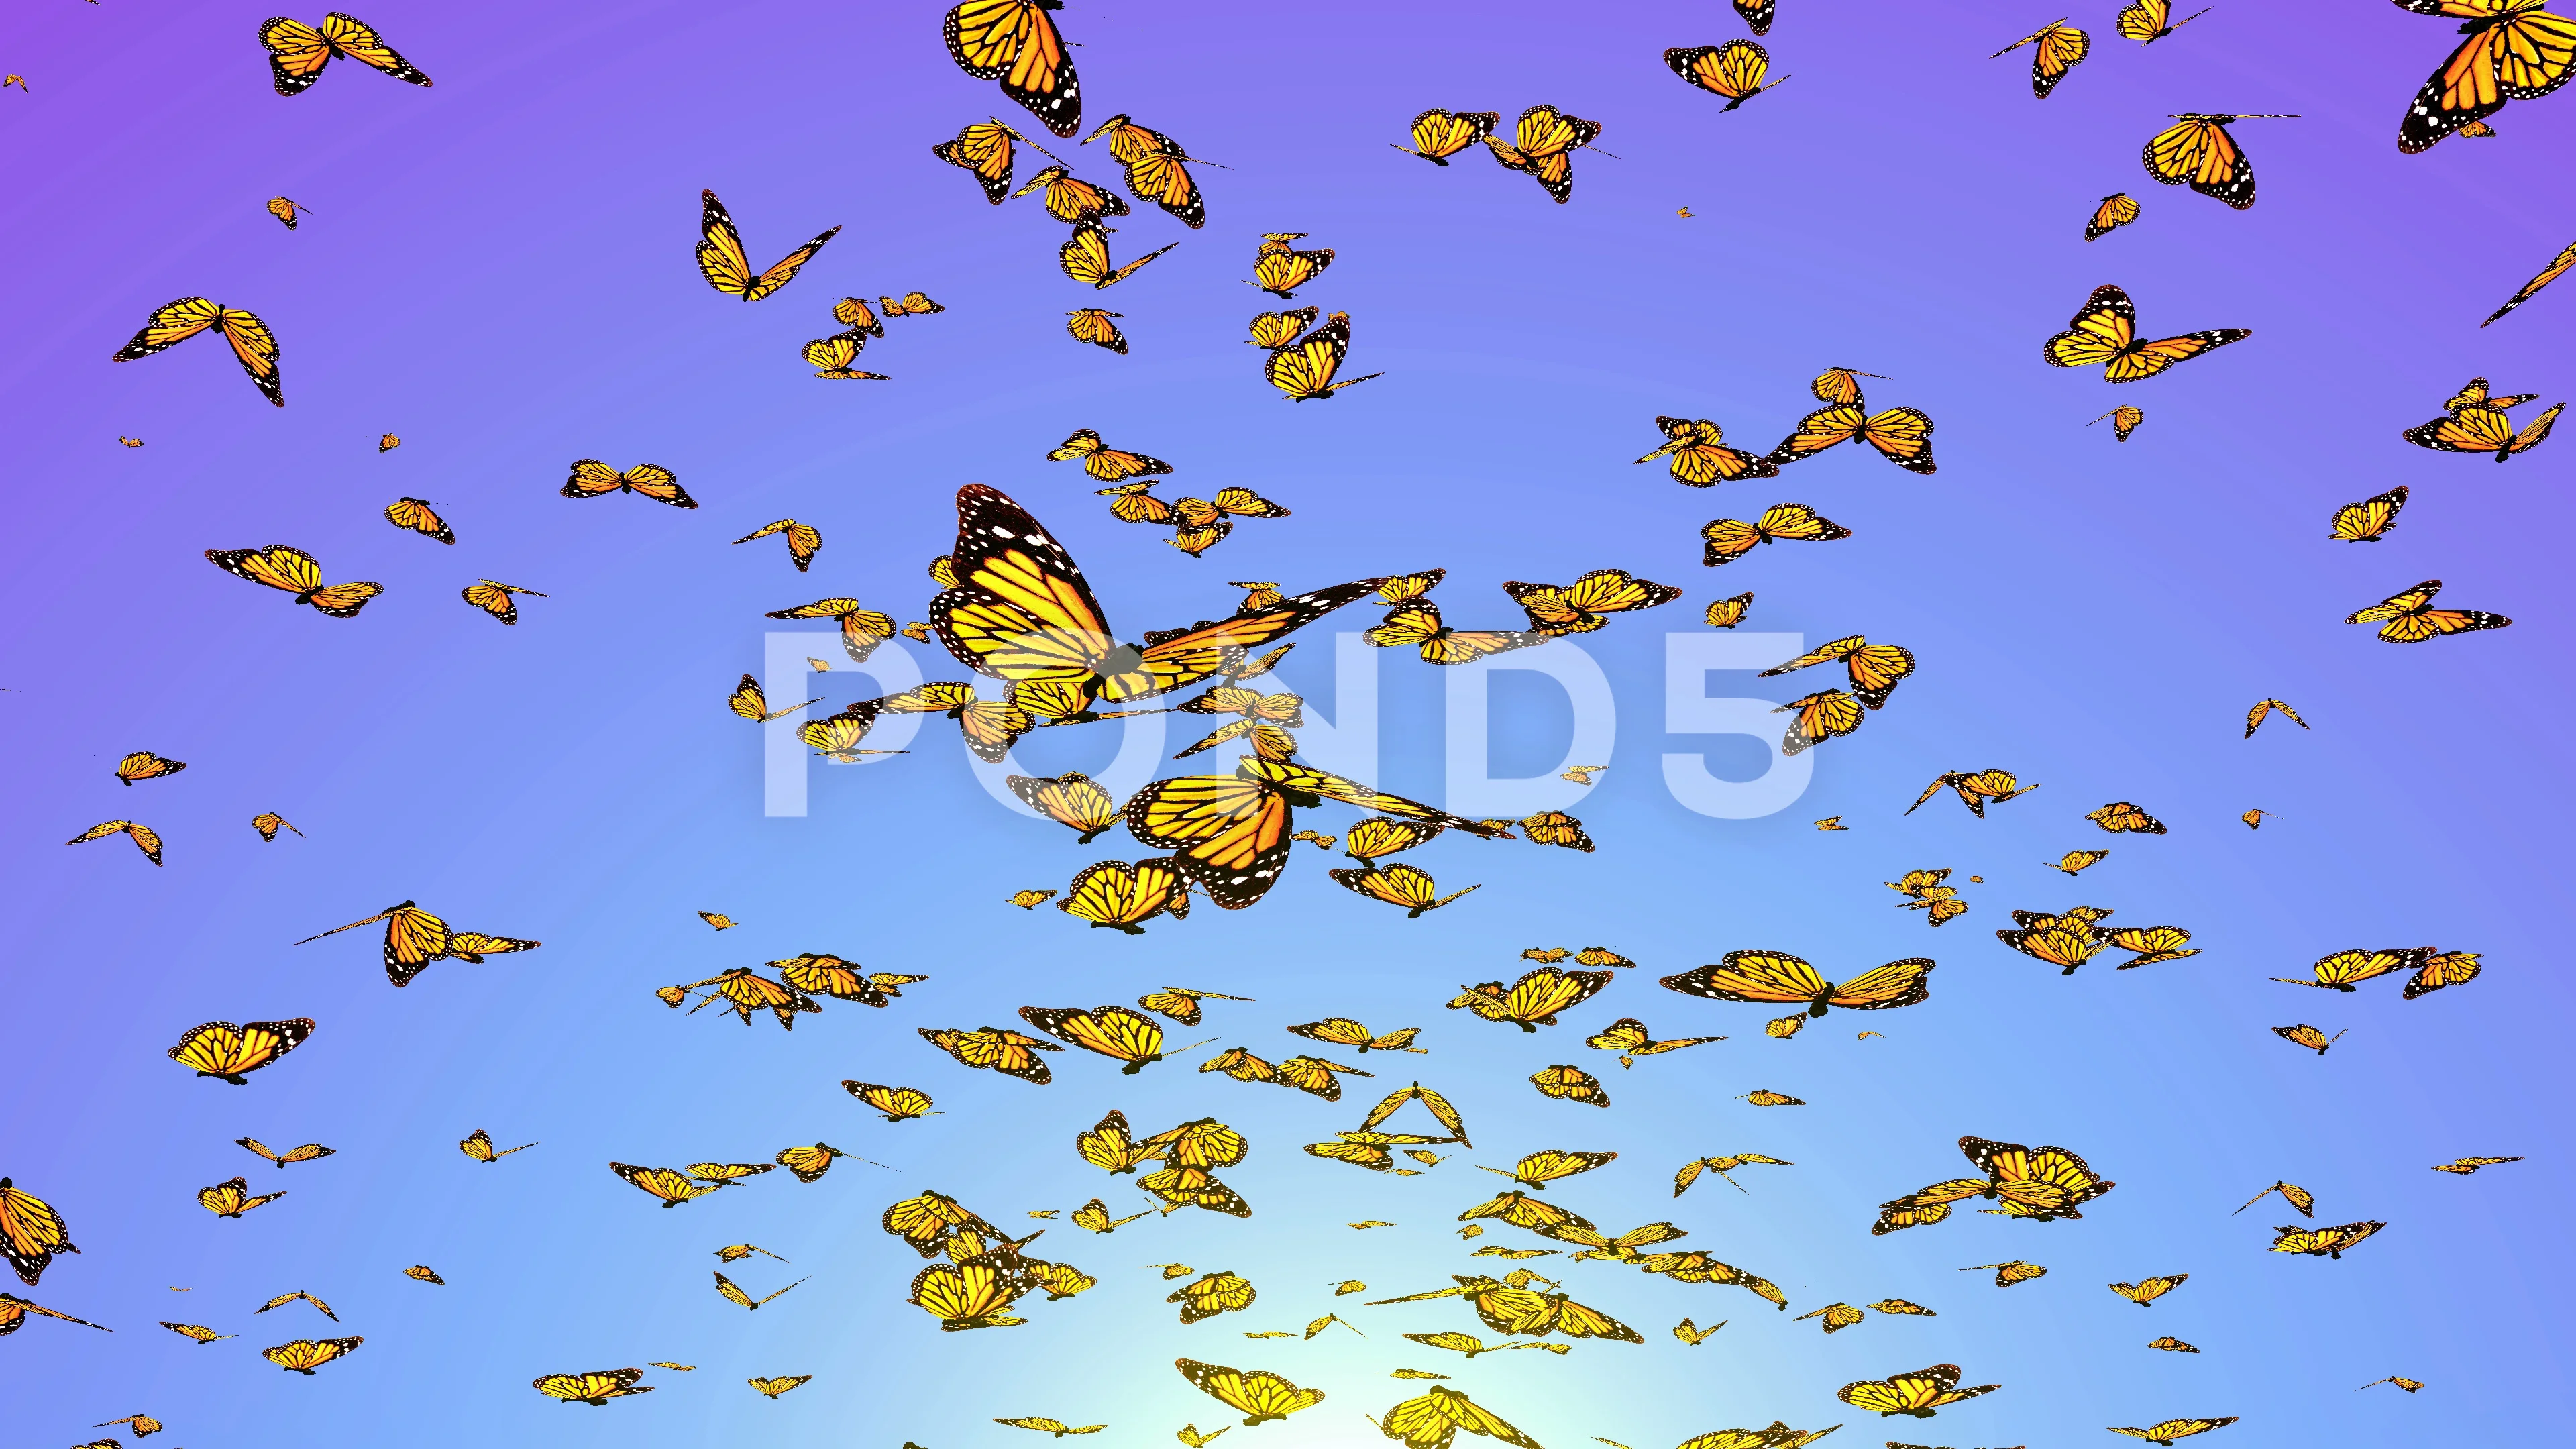 https://images.pond5.com/flying-butterflies-group-butterflies-071826829_prevstill.jpeg